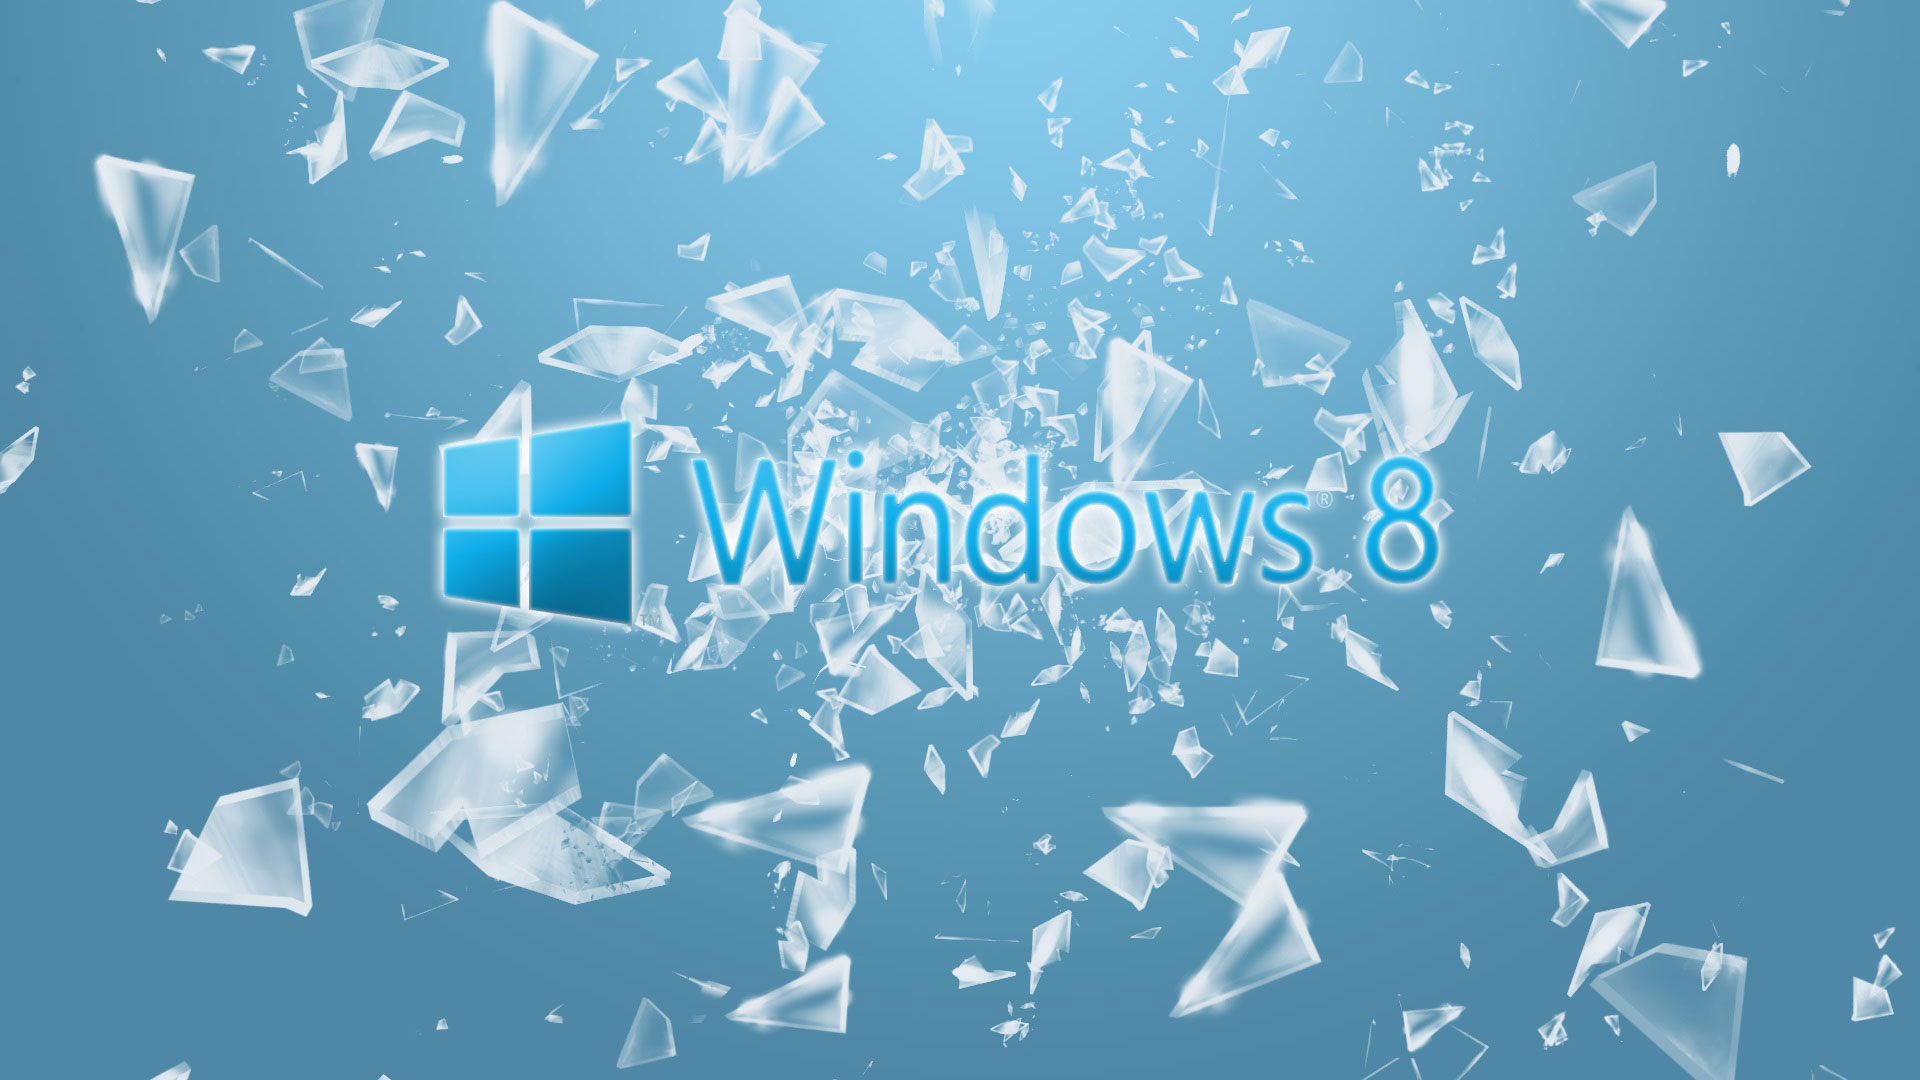 Windows 8 là hệ điều hành tiên tiến và sáng tạo với nhiều tính năng mới và tiện ích tuyệt vời dành cho người dùng. Hãy cùng xem hình để khám phá sự thay đổi đáng kể của Windows 8 so với các phiên bản trước đó.